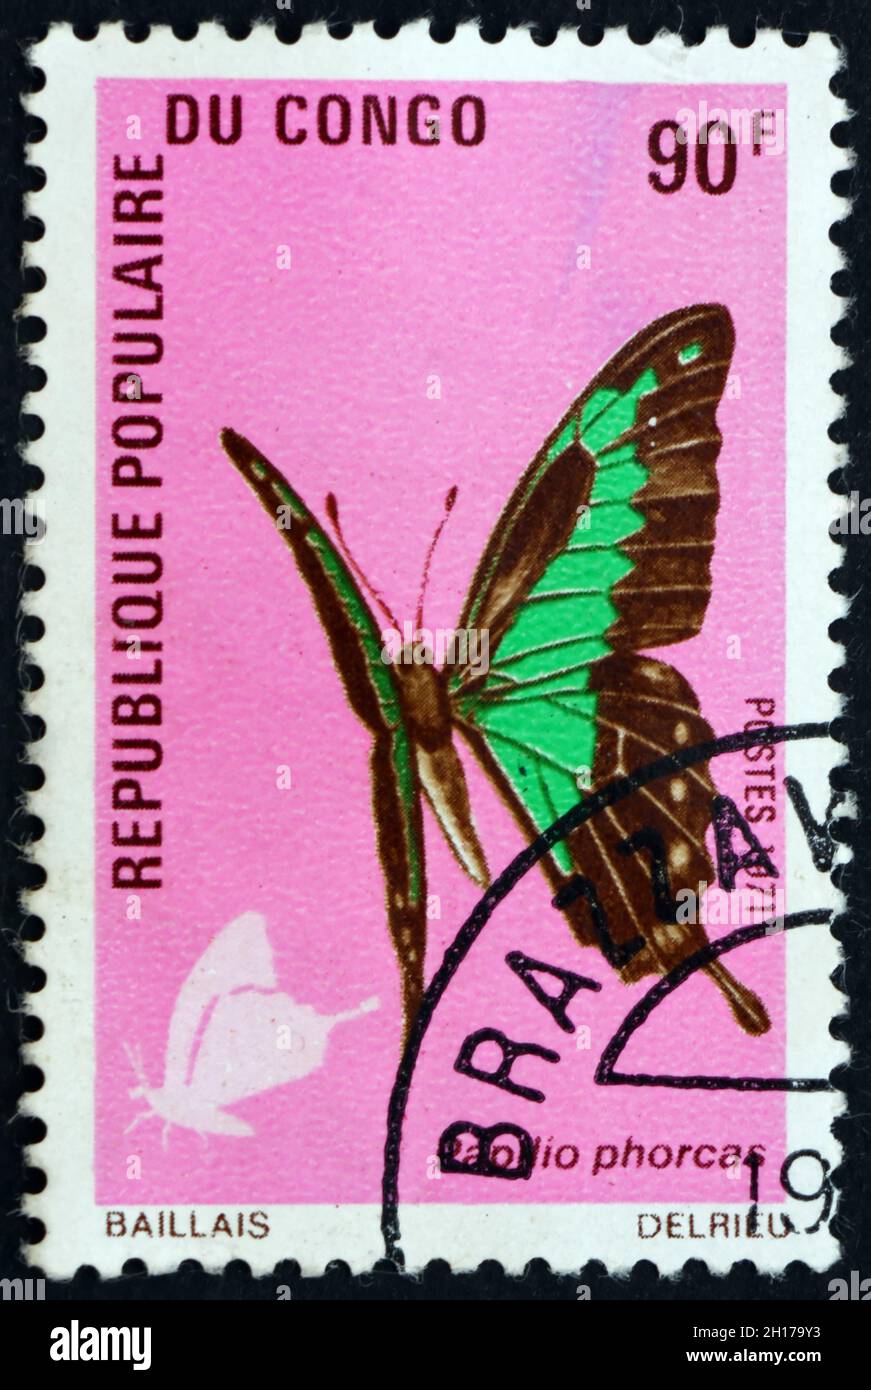 CONGO - VERS 1971: Un timbre imprimé au Congo montre la queue jaune vert pomme, phorcas papilio, papillon, vers 1971 Banque D'Images